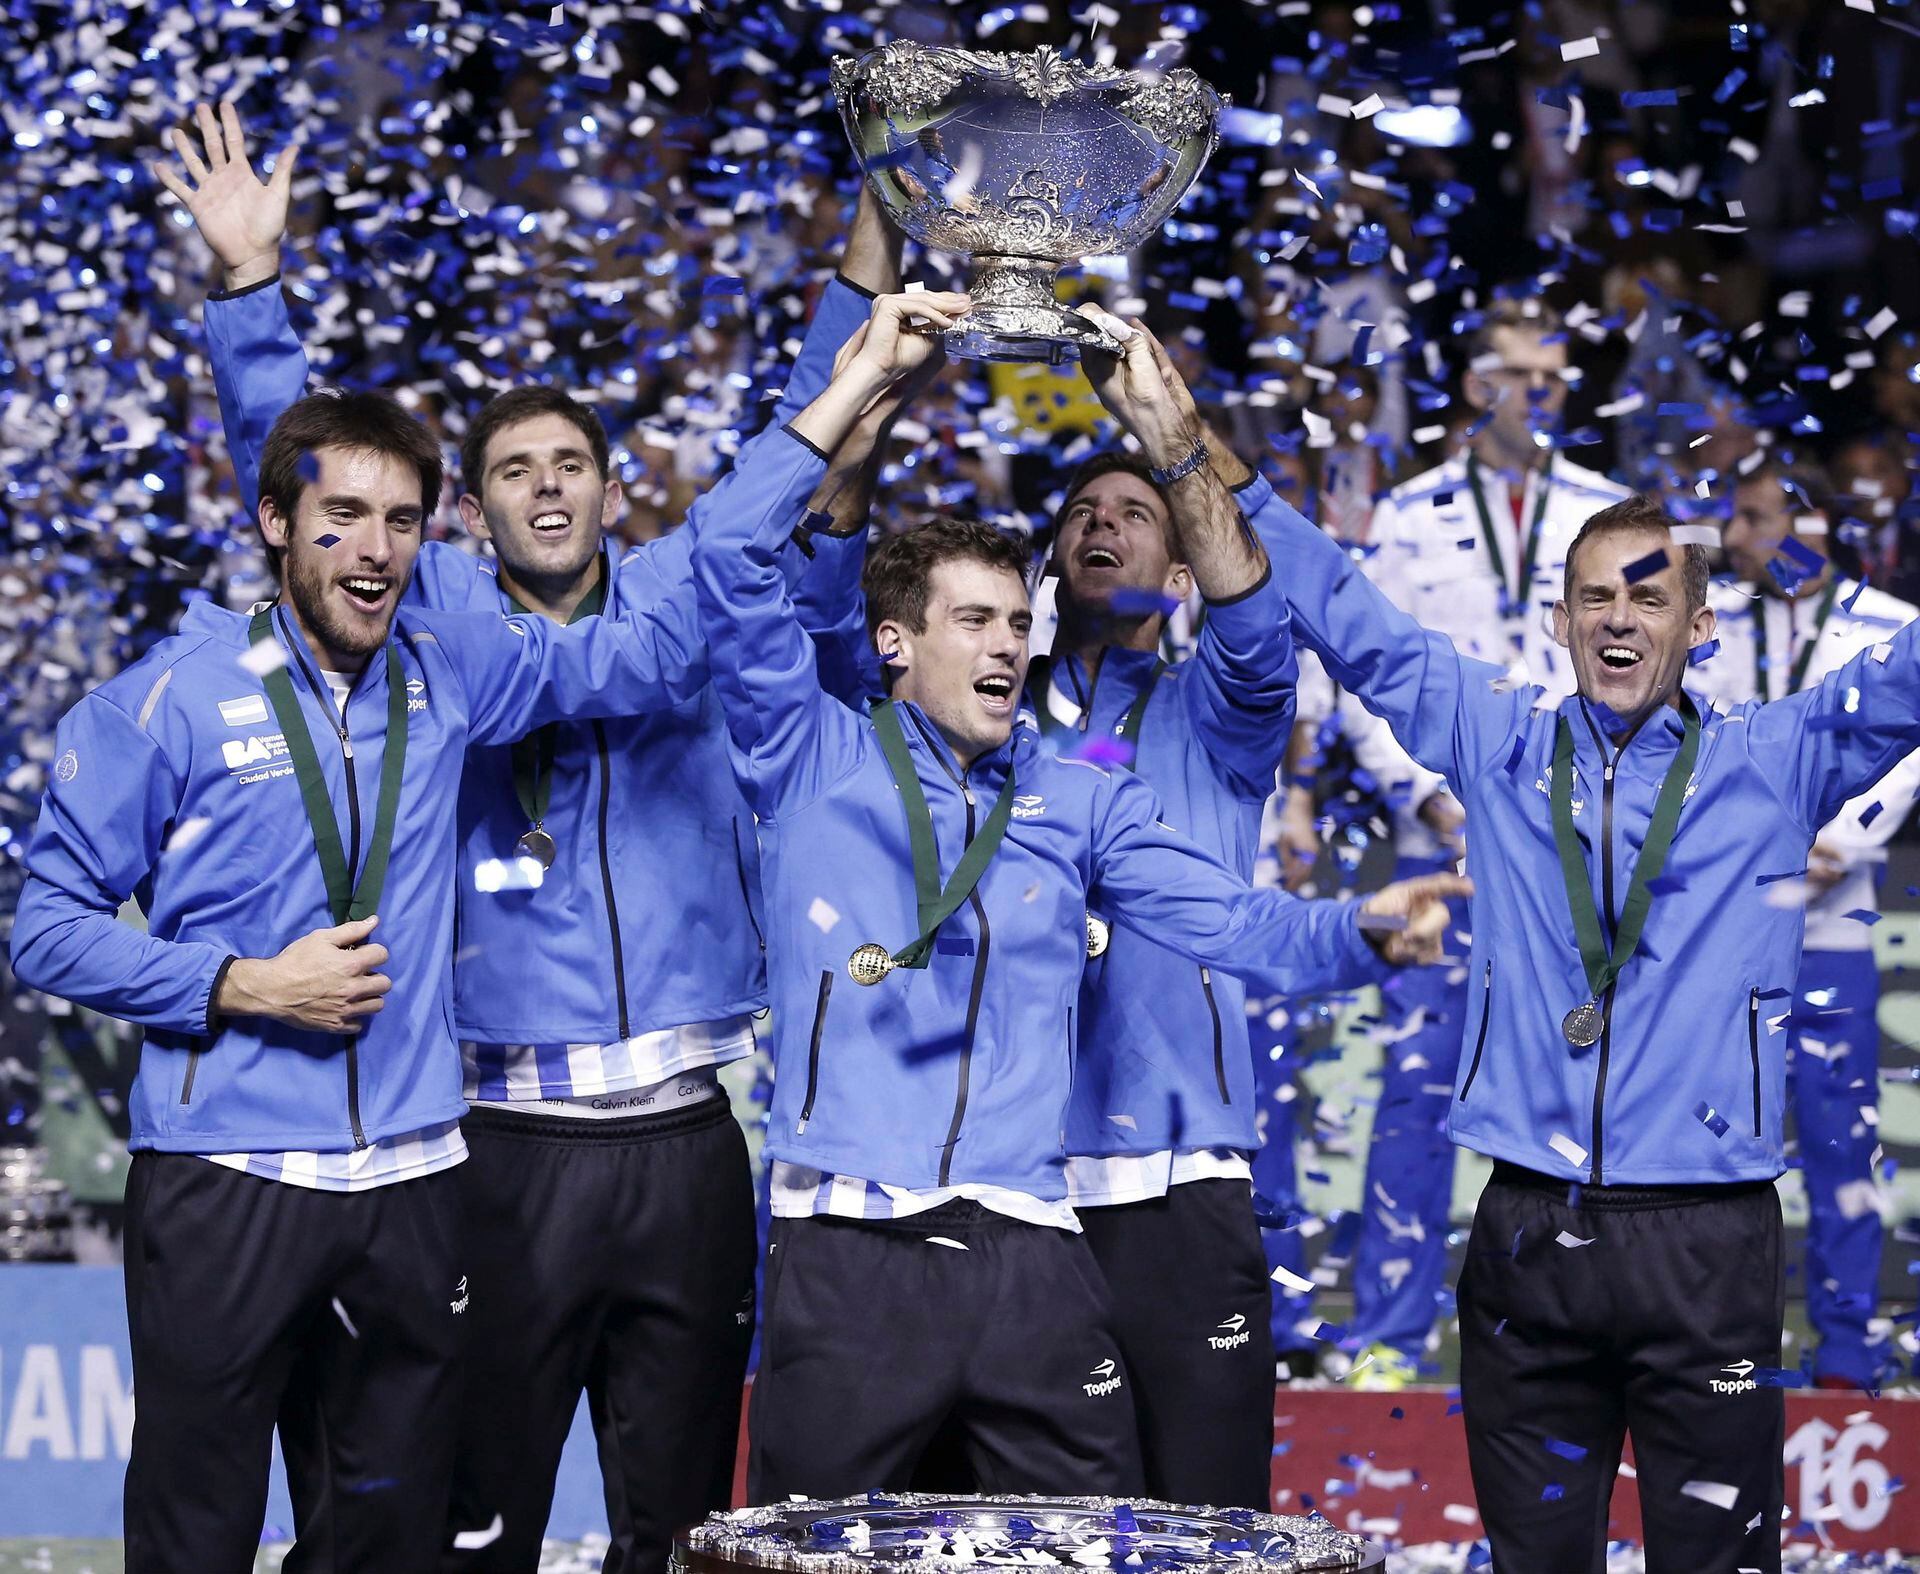 El cielo con las manos. En 2016, en Zagreb, la Argentina logró por primera vez la Davis. En el festejo, Mayer, Delbonis (ganador del quinto punto ante Croacia), Pella, Del Potro y el capitán Orsanic.

